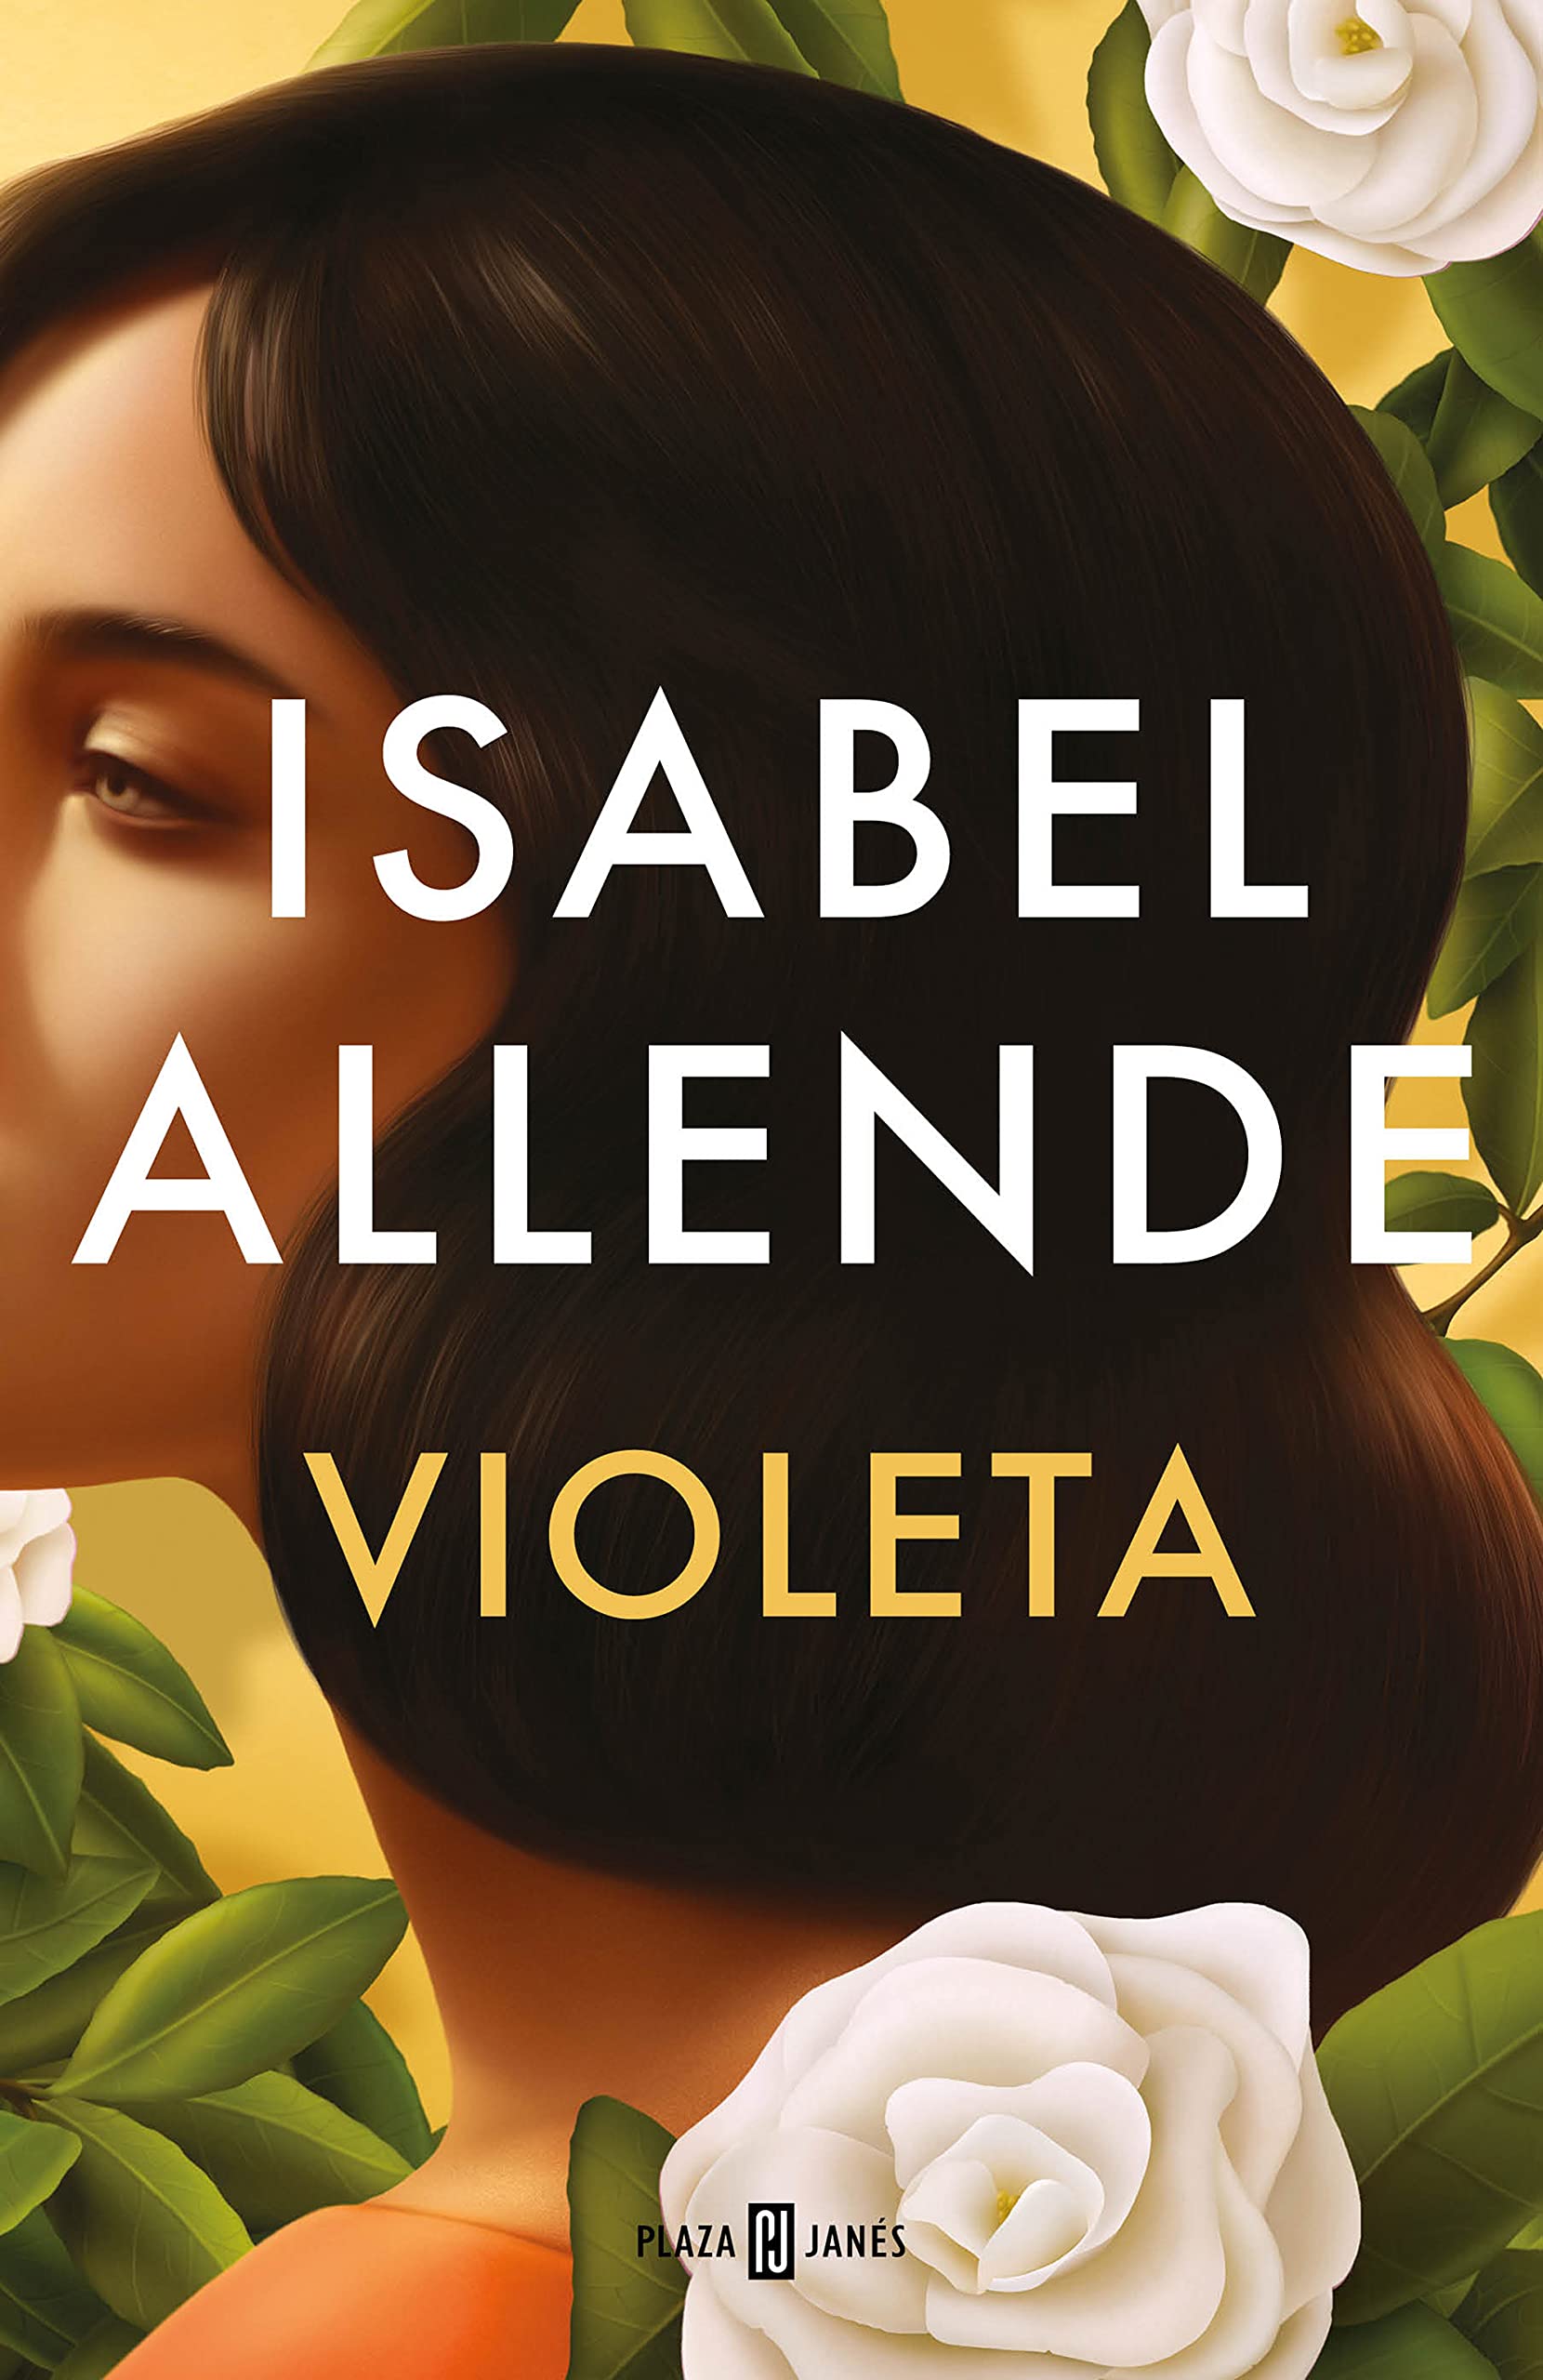 ” Violeta” Isabel Allende